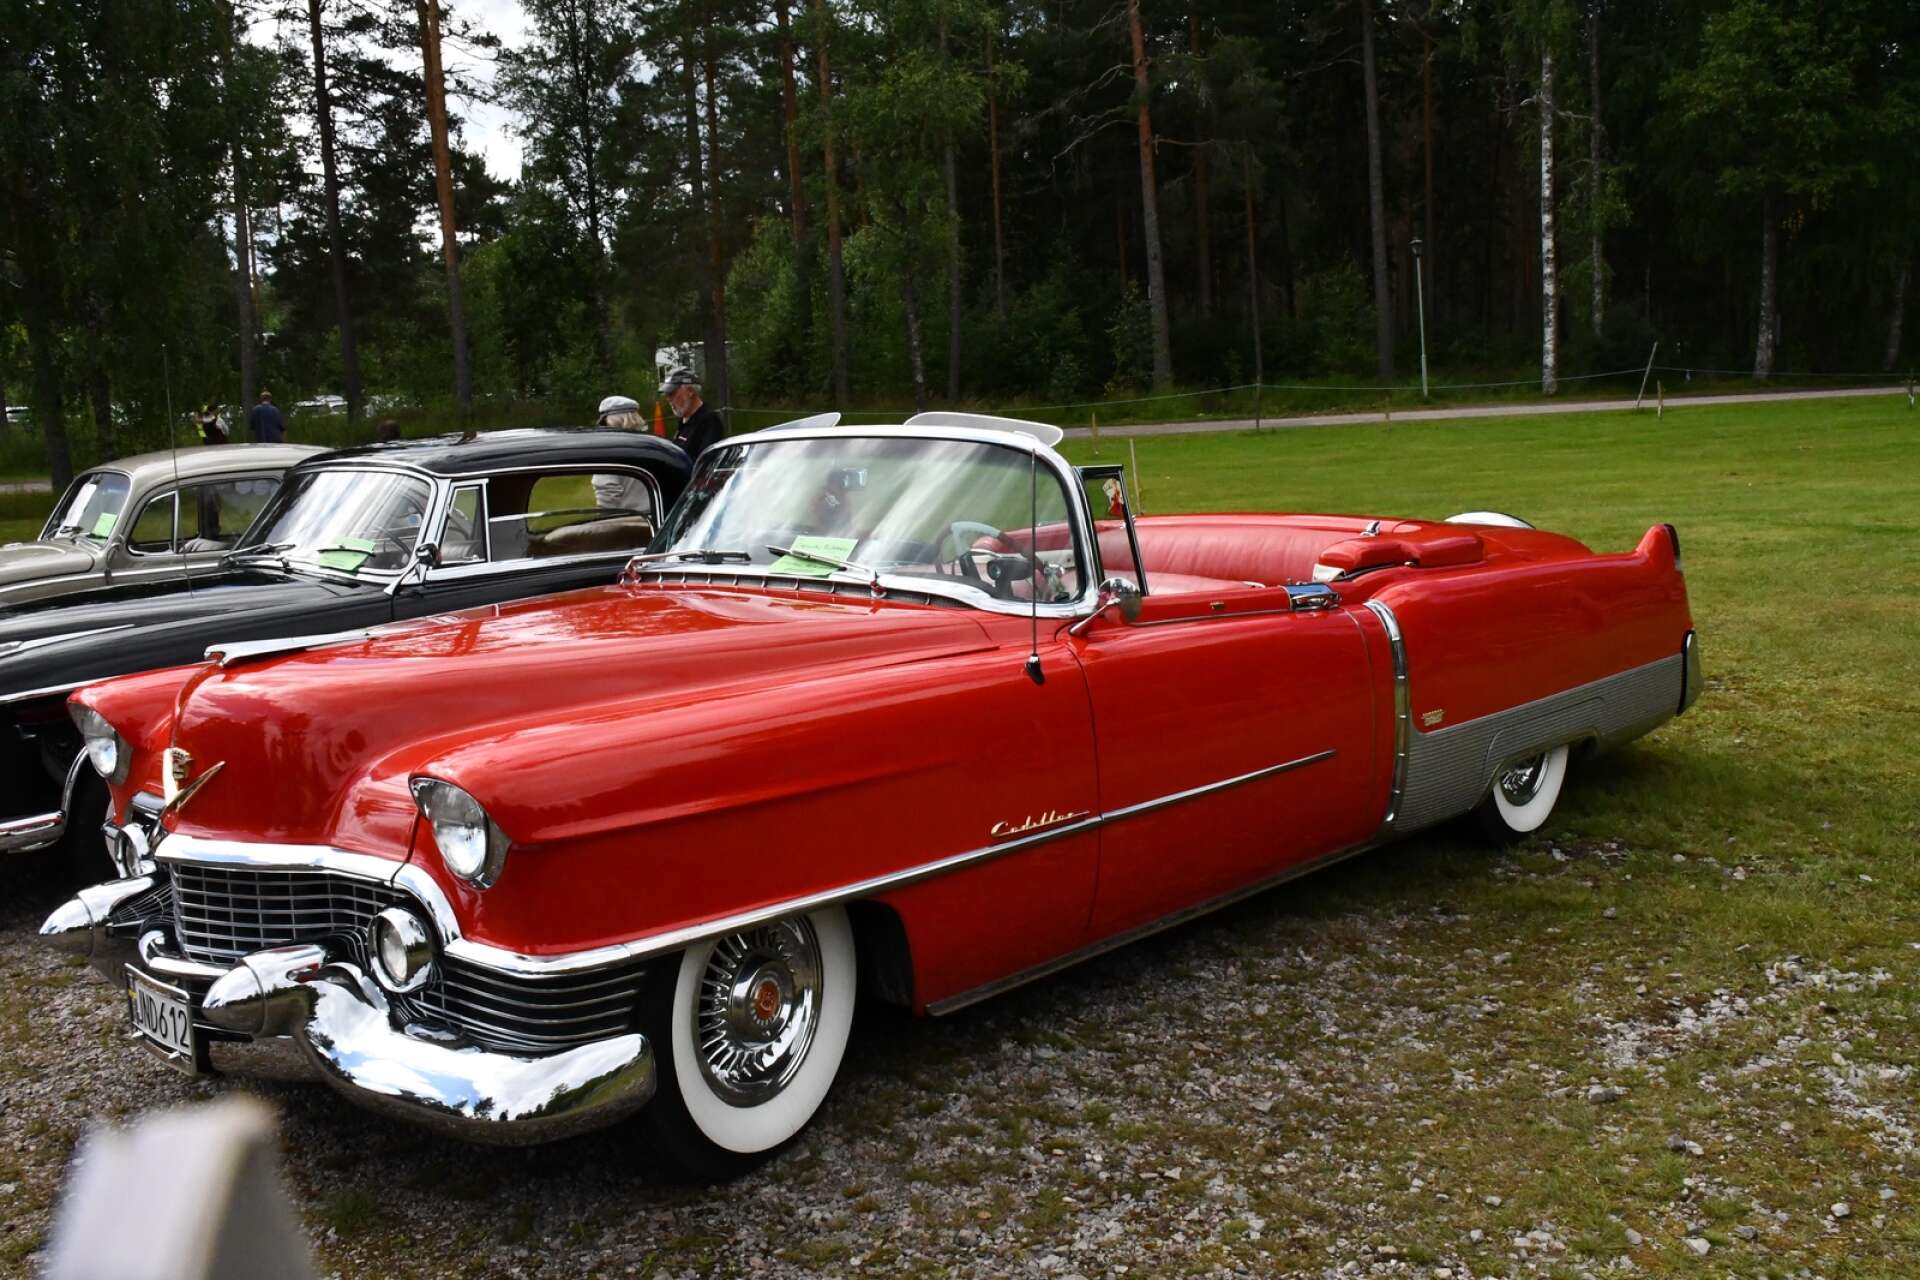 En av de tio bilar som valts ut av juryn till bilparaden: En Cadillac Eldorado 1954. Ägare Stefan Börjesson.